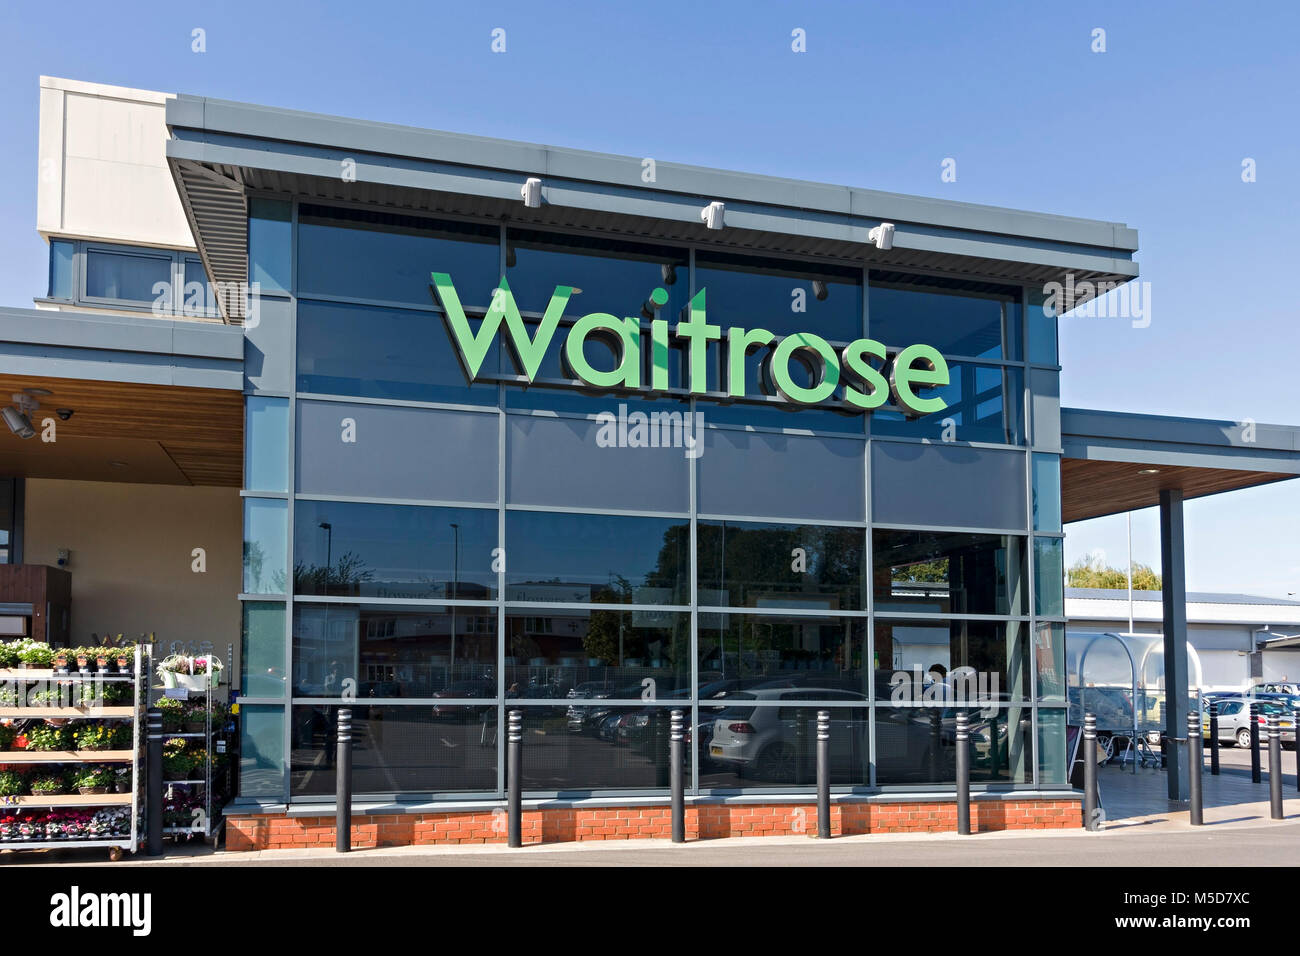 Waitrose logo on front of supermarket in Market Harborough, Leicestershire, England, UK Stock Photo